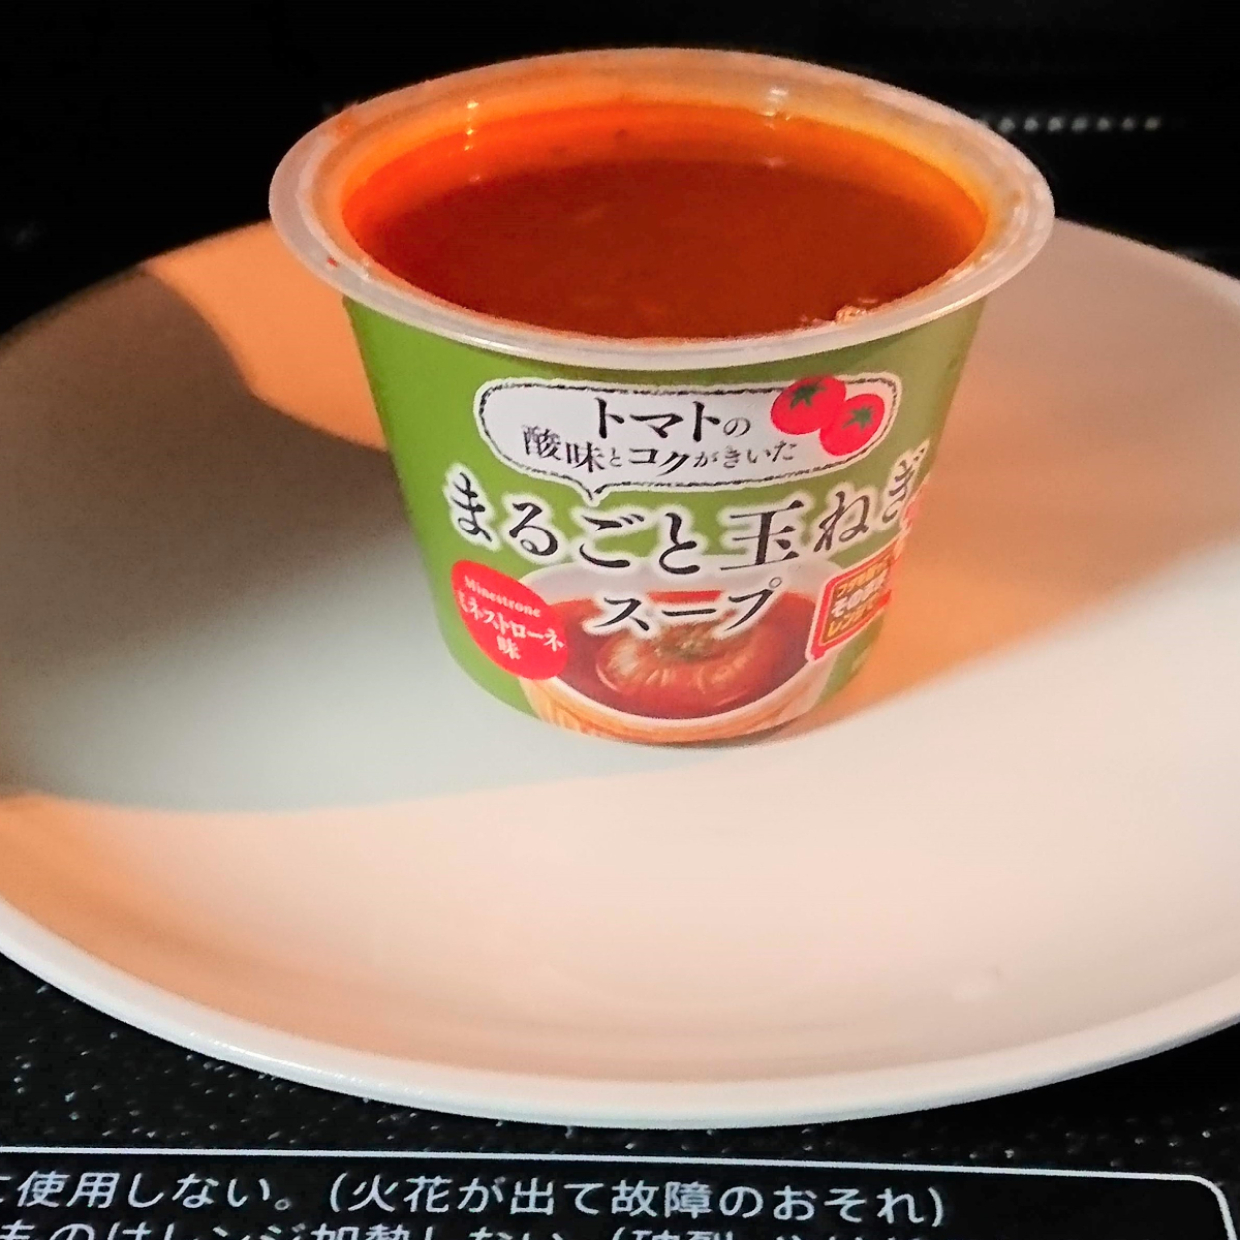  【カルディ】「まるごと玉ねぎスープ」はとろとろ玉ねぎが超美味な贅沢スープ♡低カロリーなのもうれしい♪ 